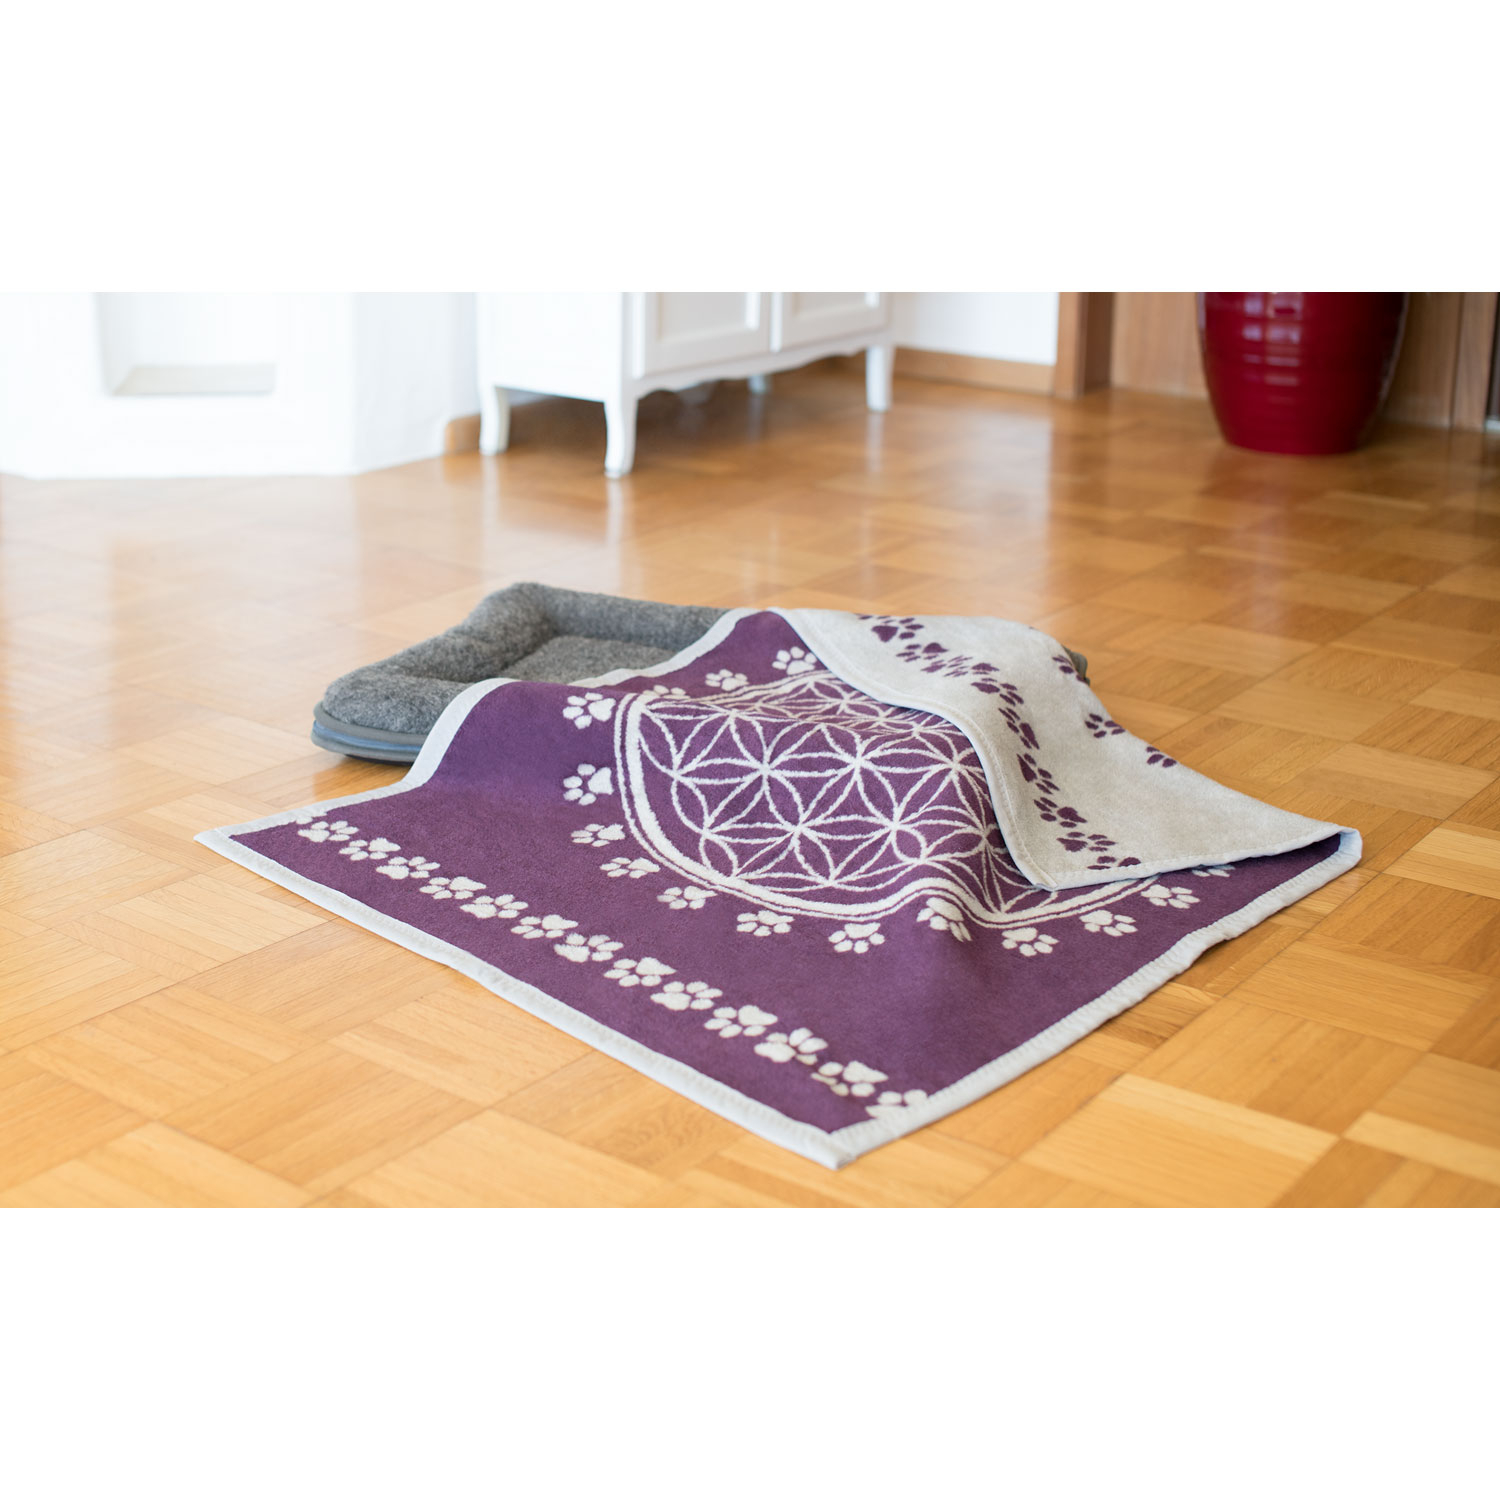 Haustier-Decke „Blume des Lebens“, Violett/Hellgrau, Produktbild 2